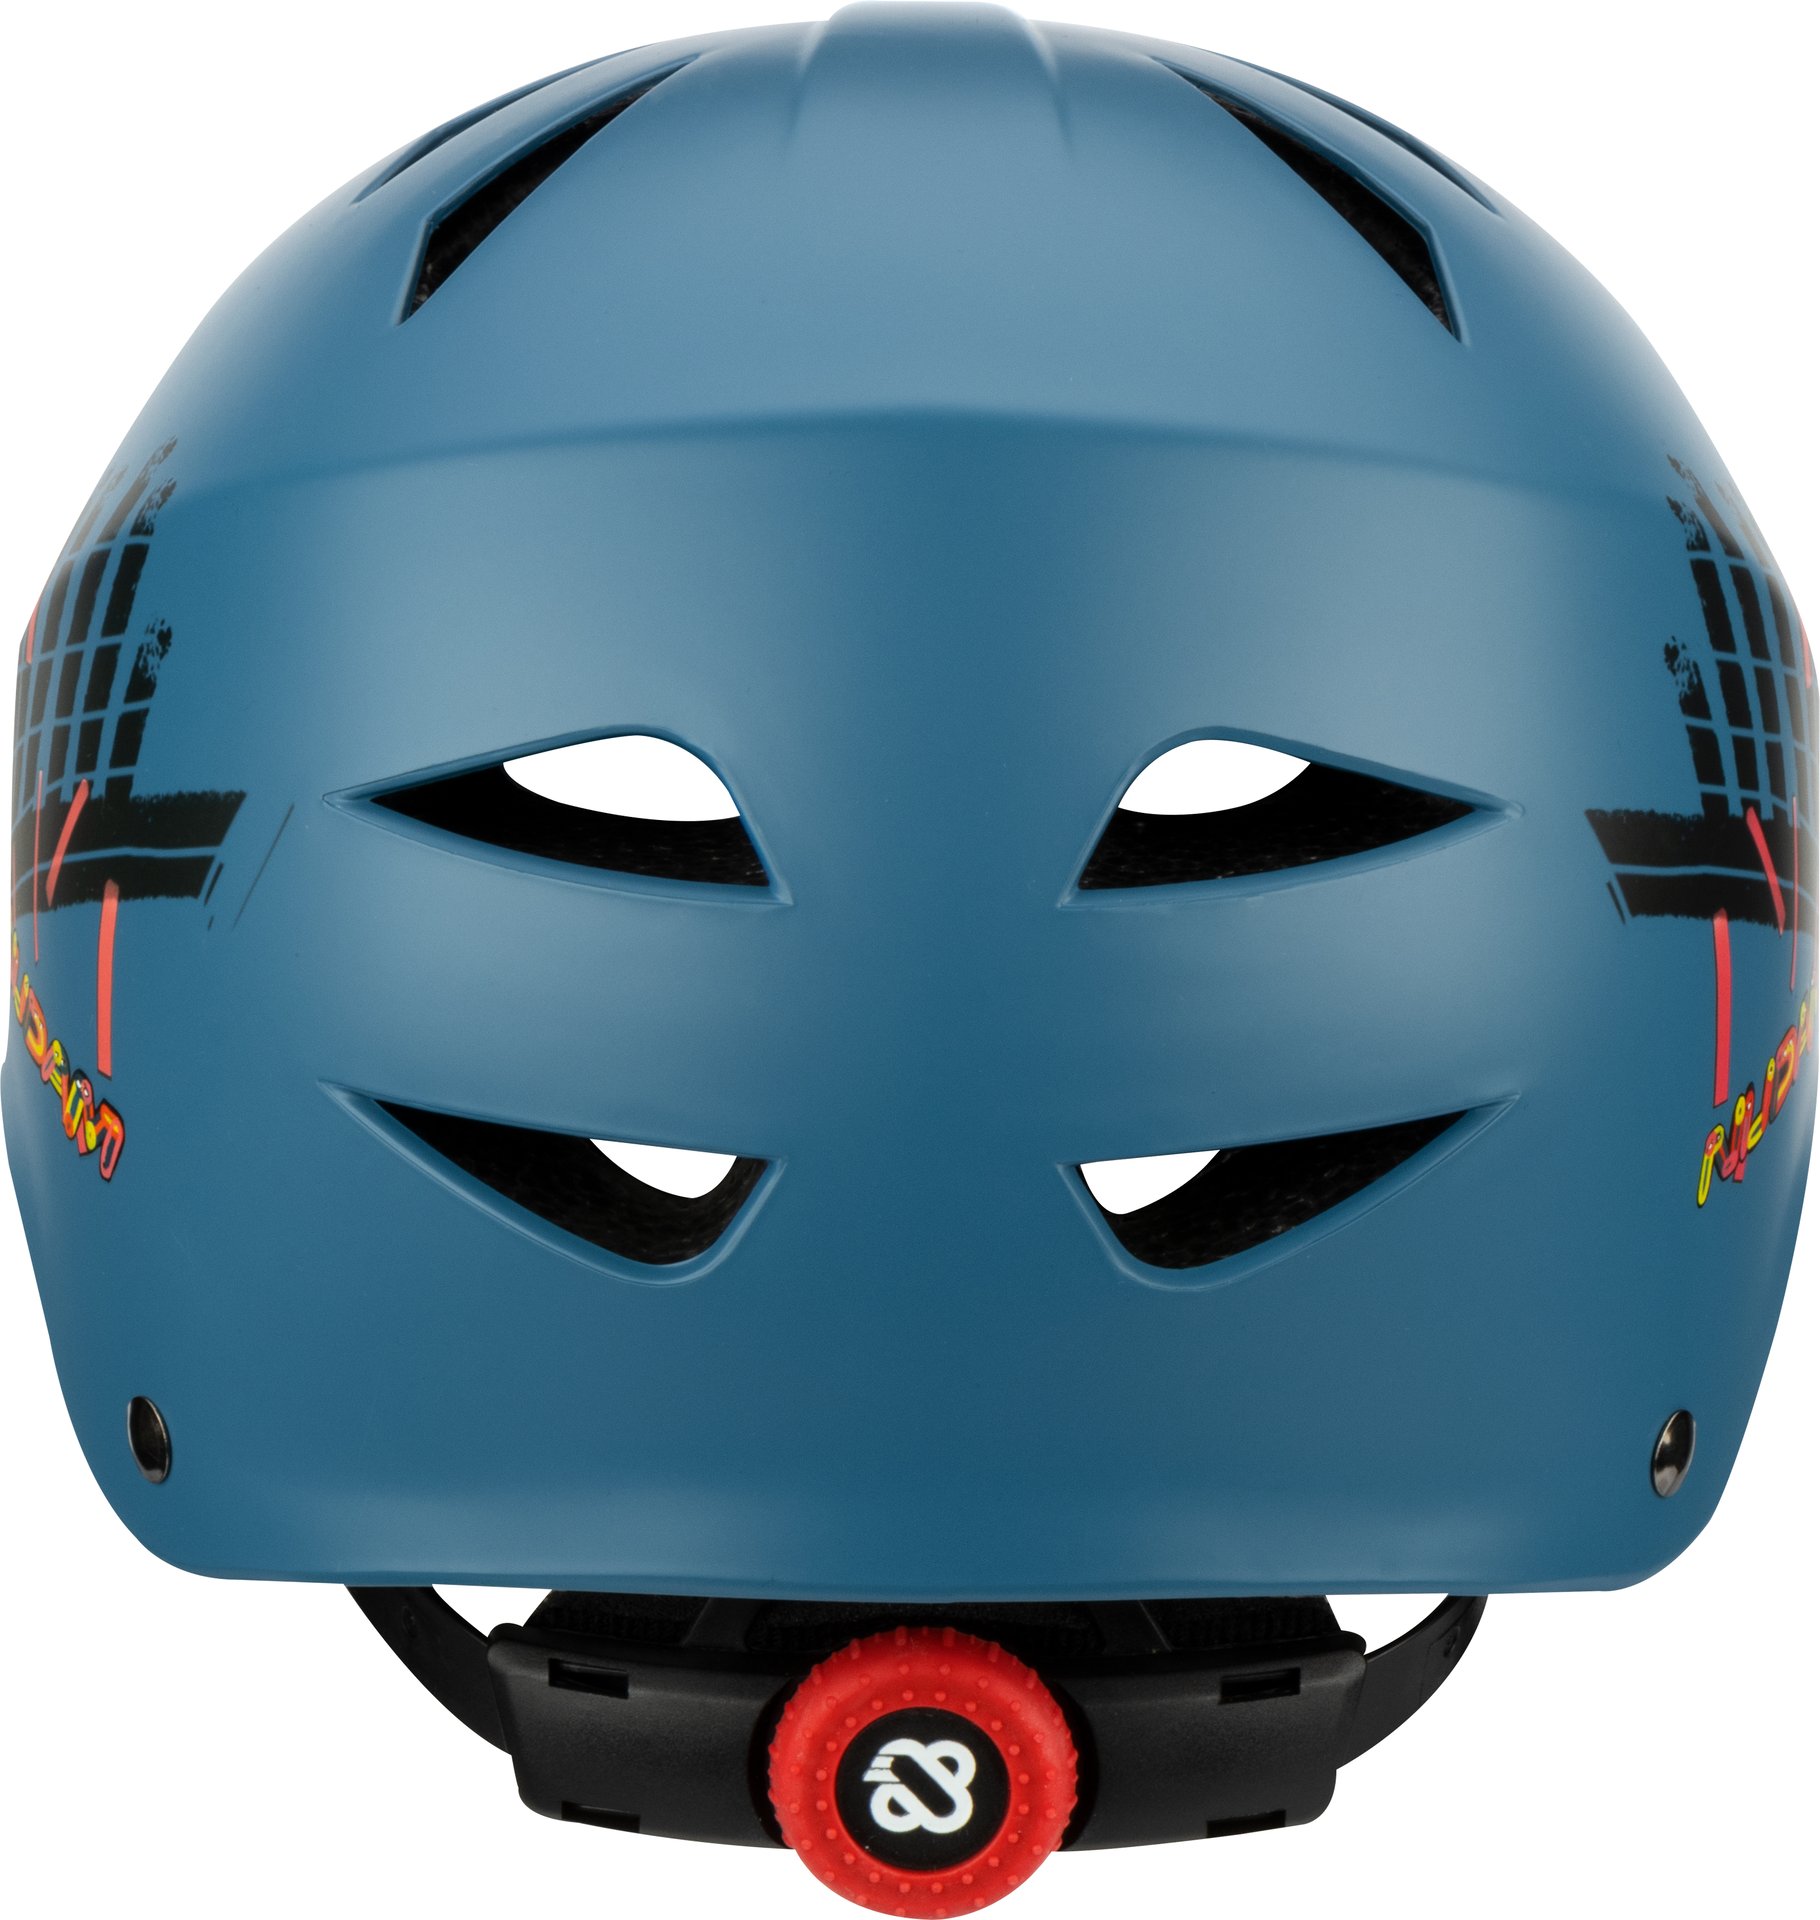 Skate Helm - Sidewalk Sentinel